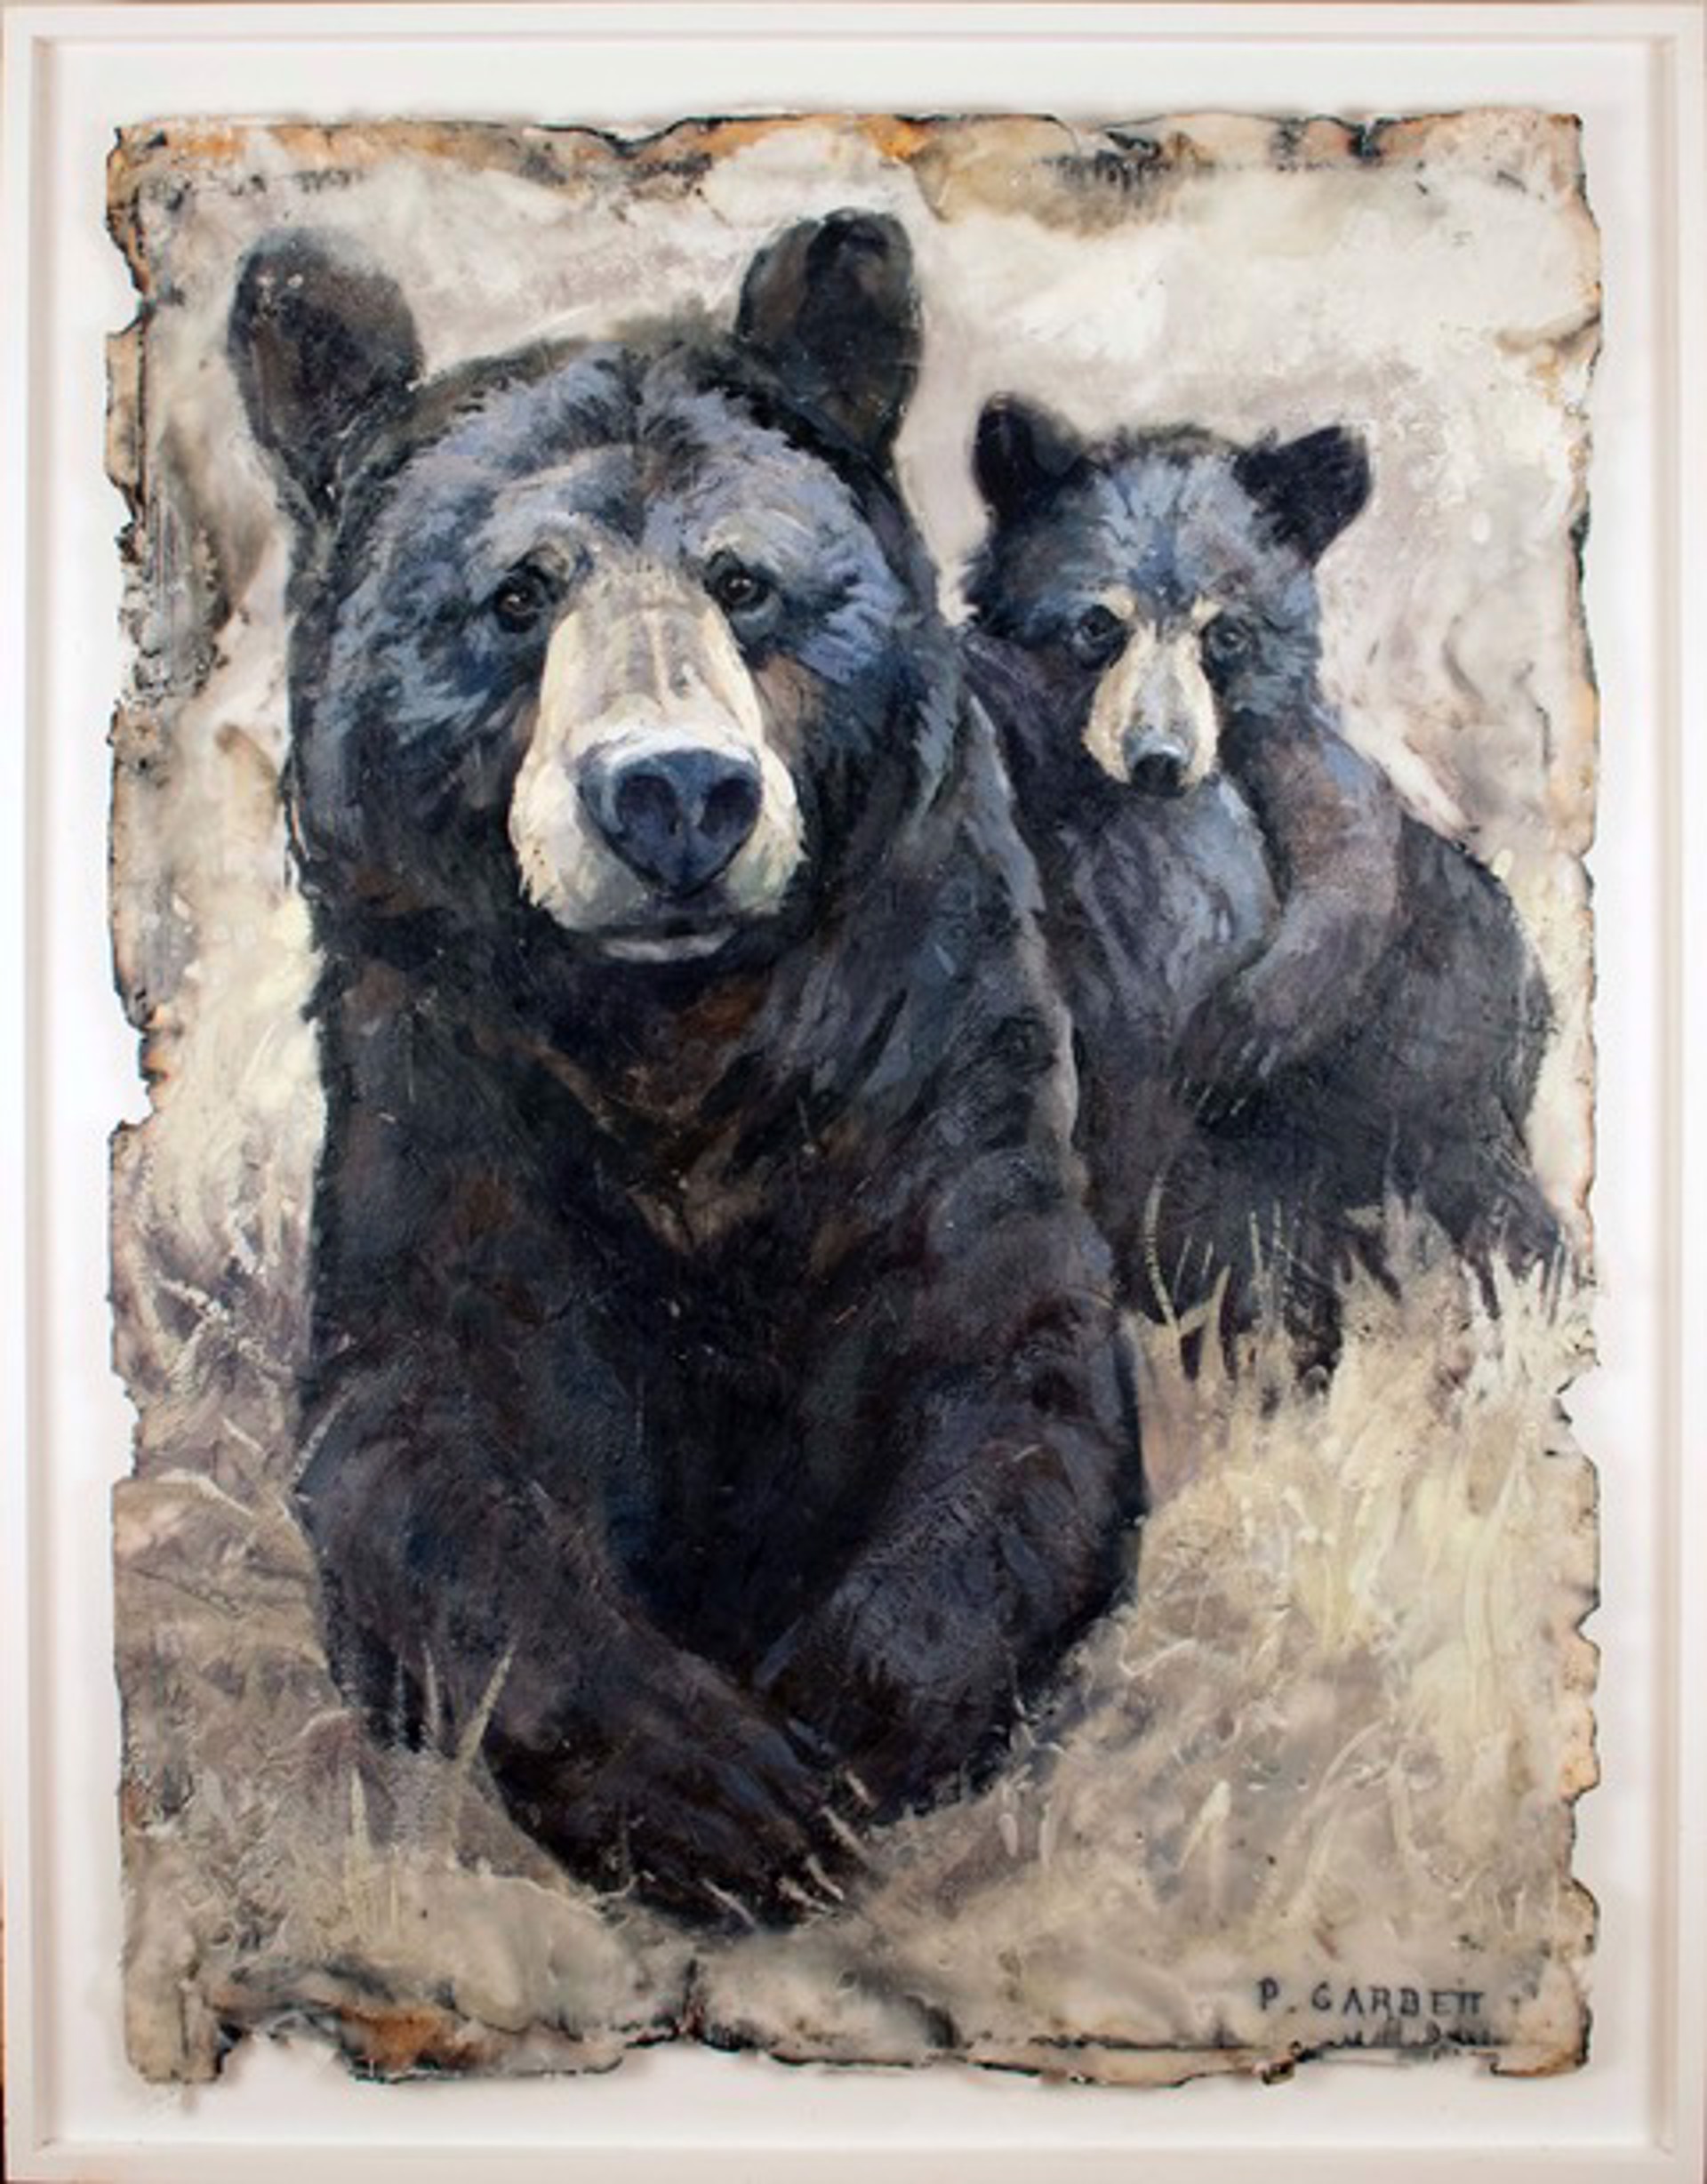 Mama and cub by Paul Garbett